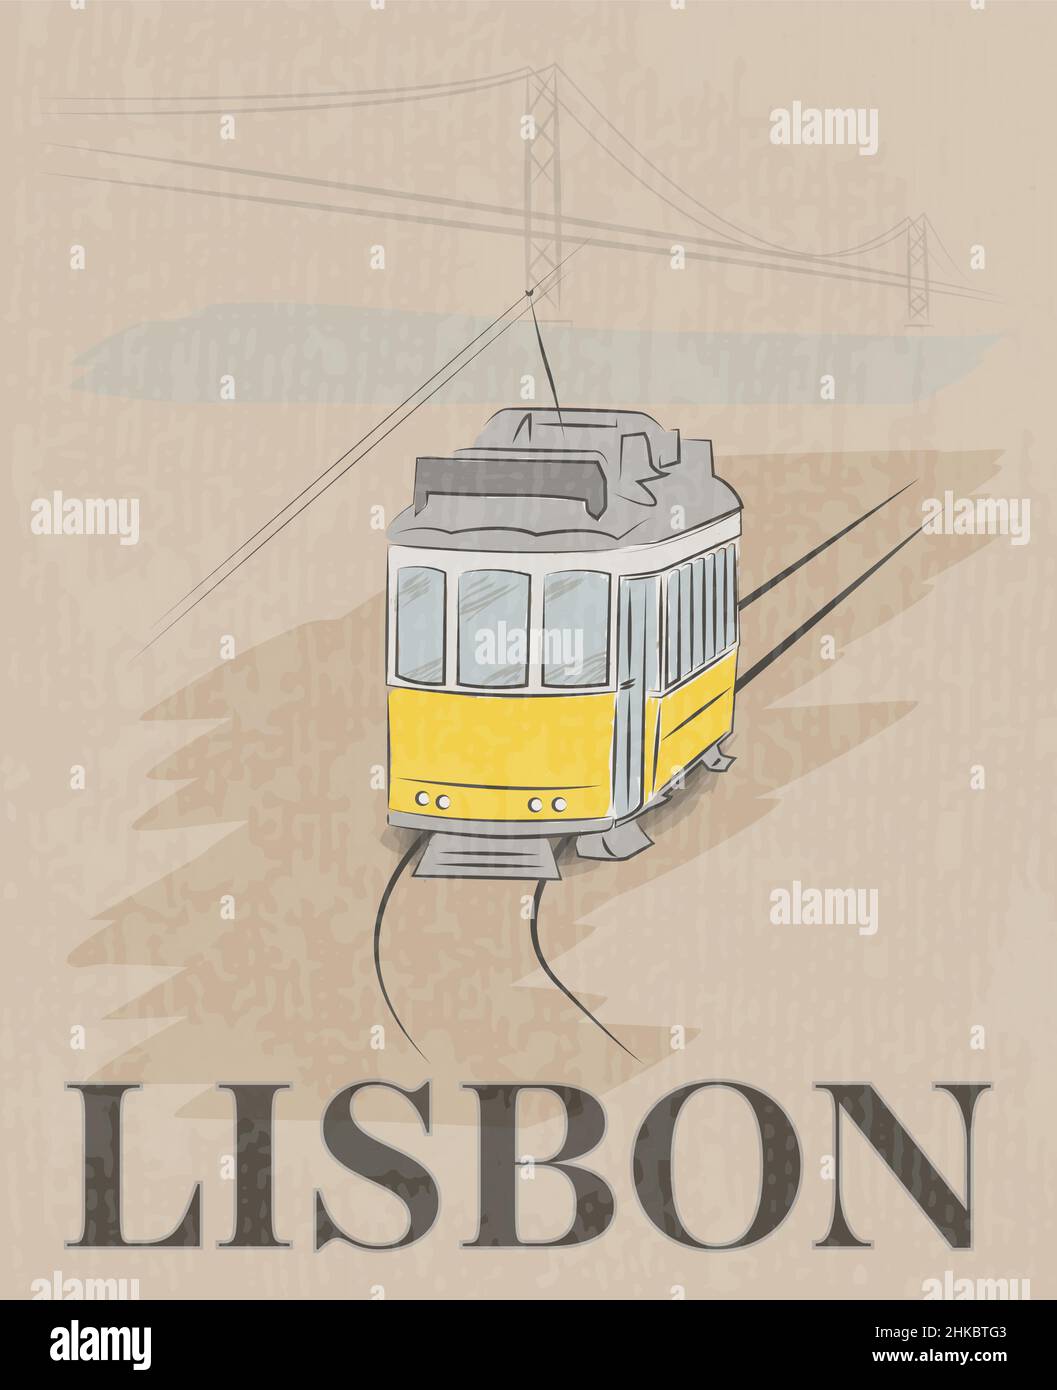 Poster raffigurato a mano a Lisbona con tram e ponte 25 de Abril, illustrazione vettoriale Illustrazione Vettoriale